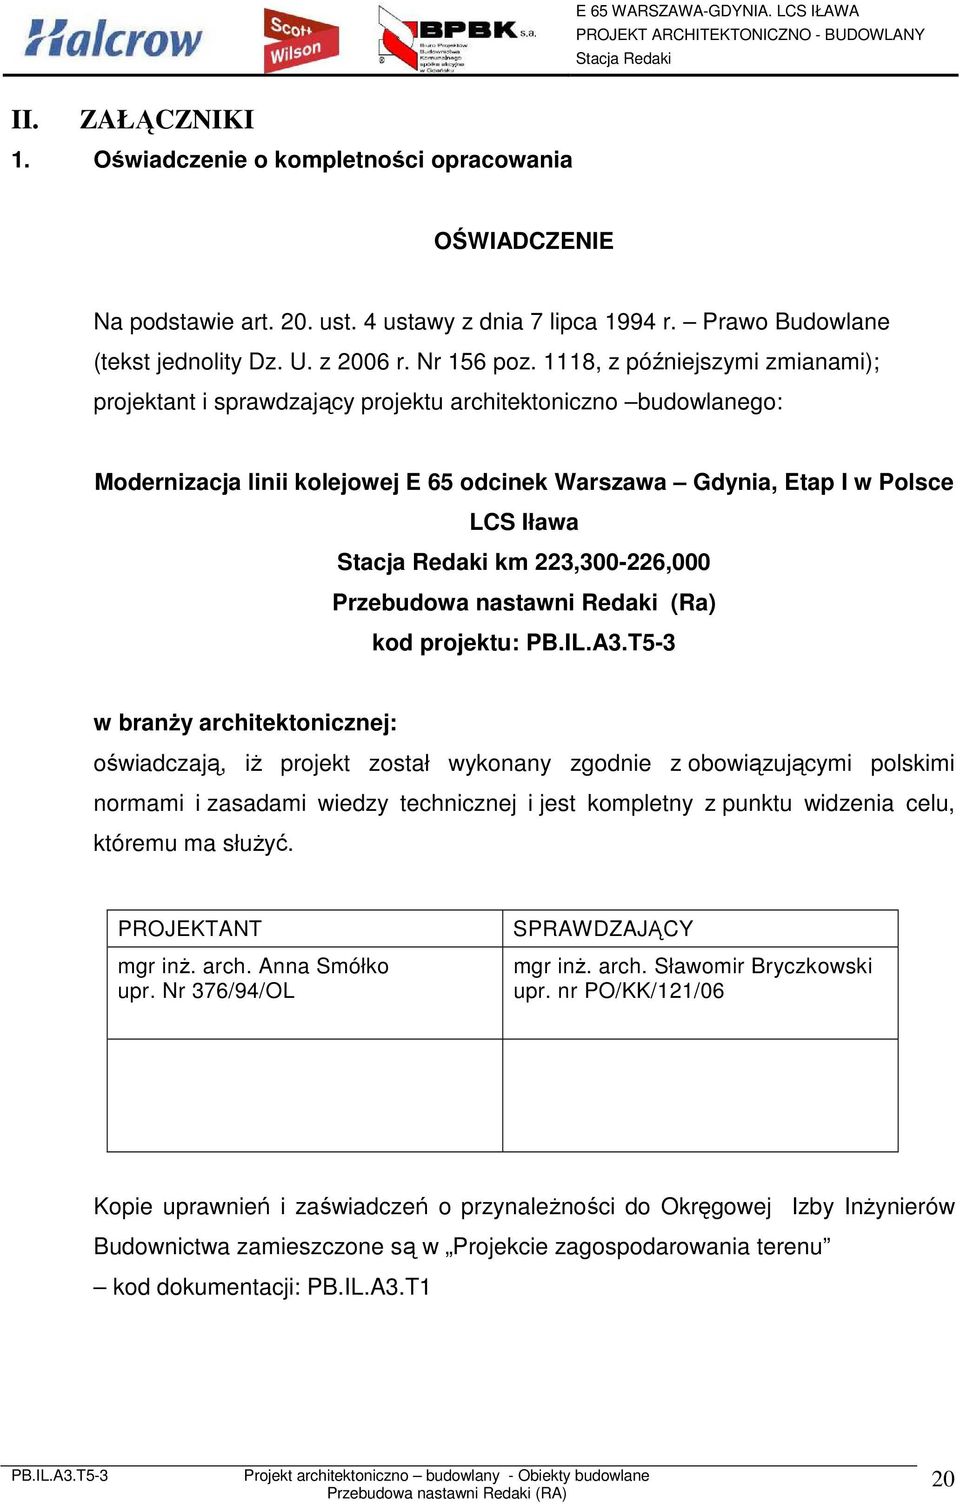 223,300-226,000 Przebudowa nastawni Redaki (Ra) kod projektu: w branŝy architektonicznej: oświadczają, iŝ projekt został wykonany zgodnie z obowiązującymi polskimi normami i zasadami wiedzy